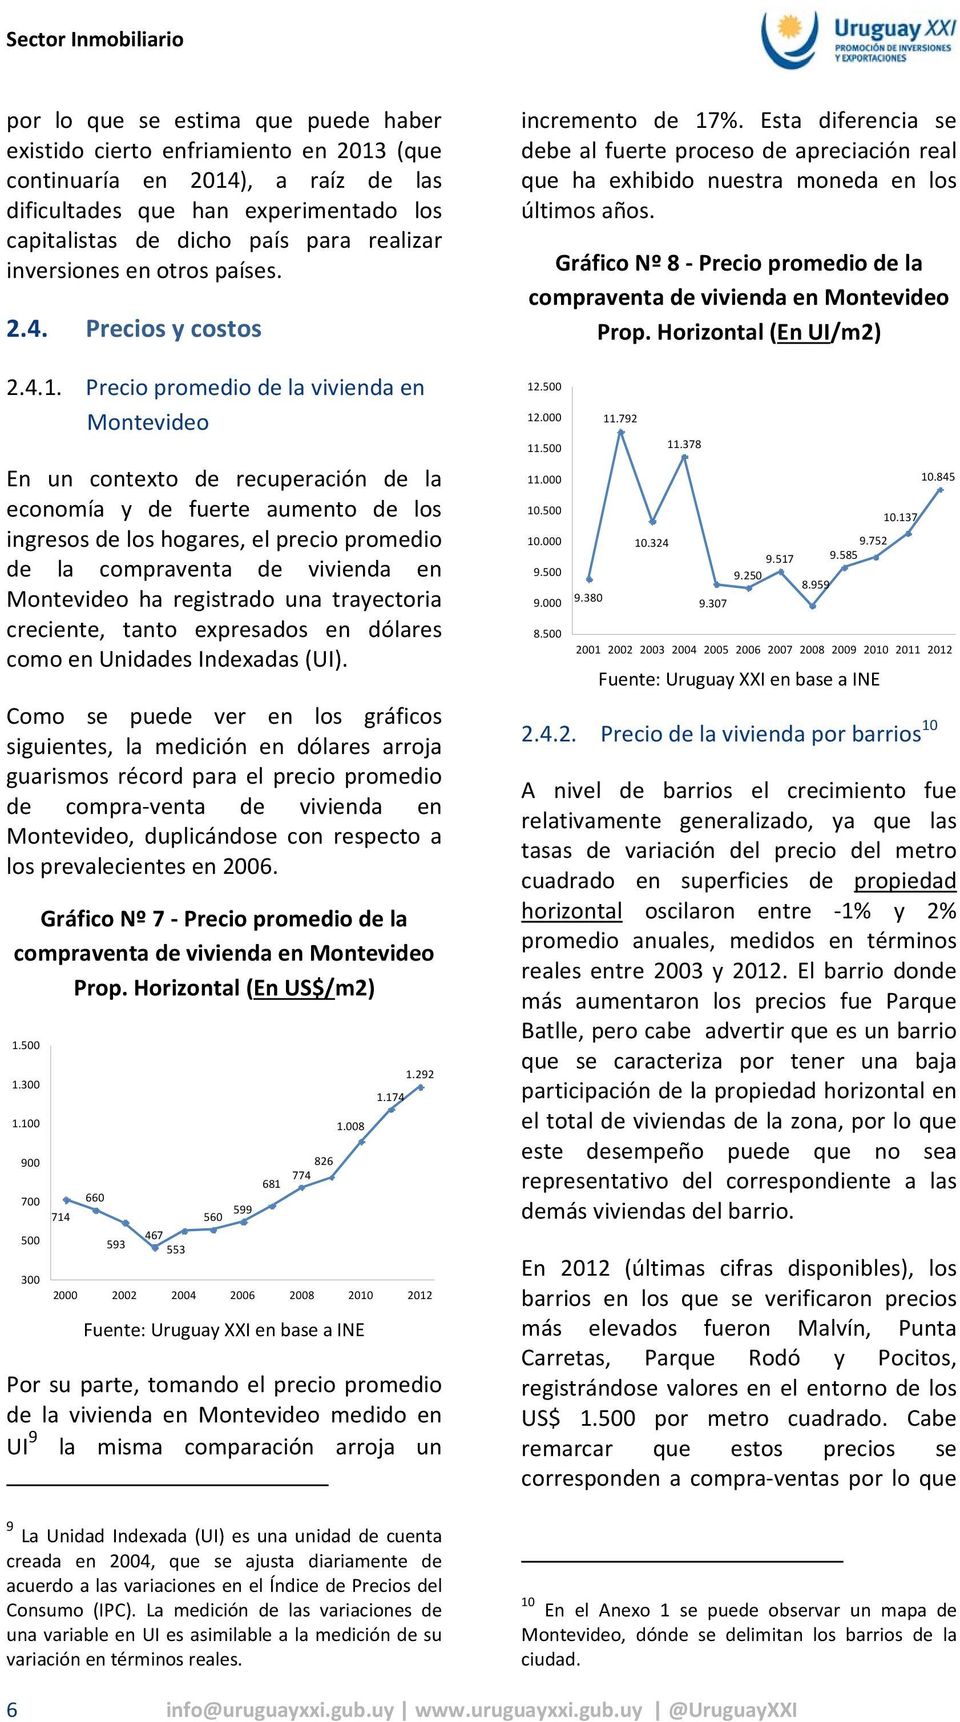 Precio promedio de la vivienda en Montevideo En un contexto de recuperación de la economía y de fuerte aumento de los ingresos de los hogares, el precio promedio de la compraventa de vivienda en